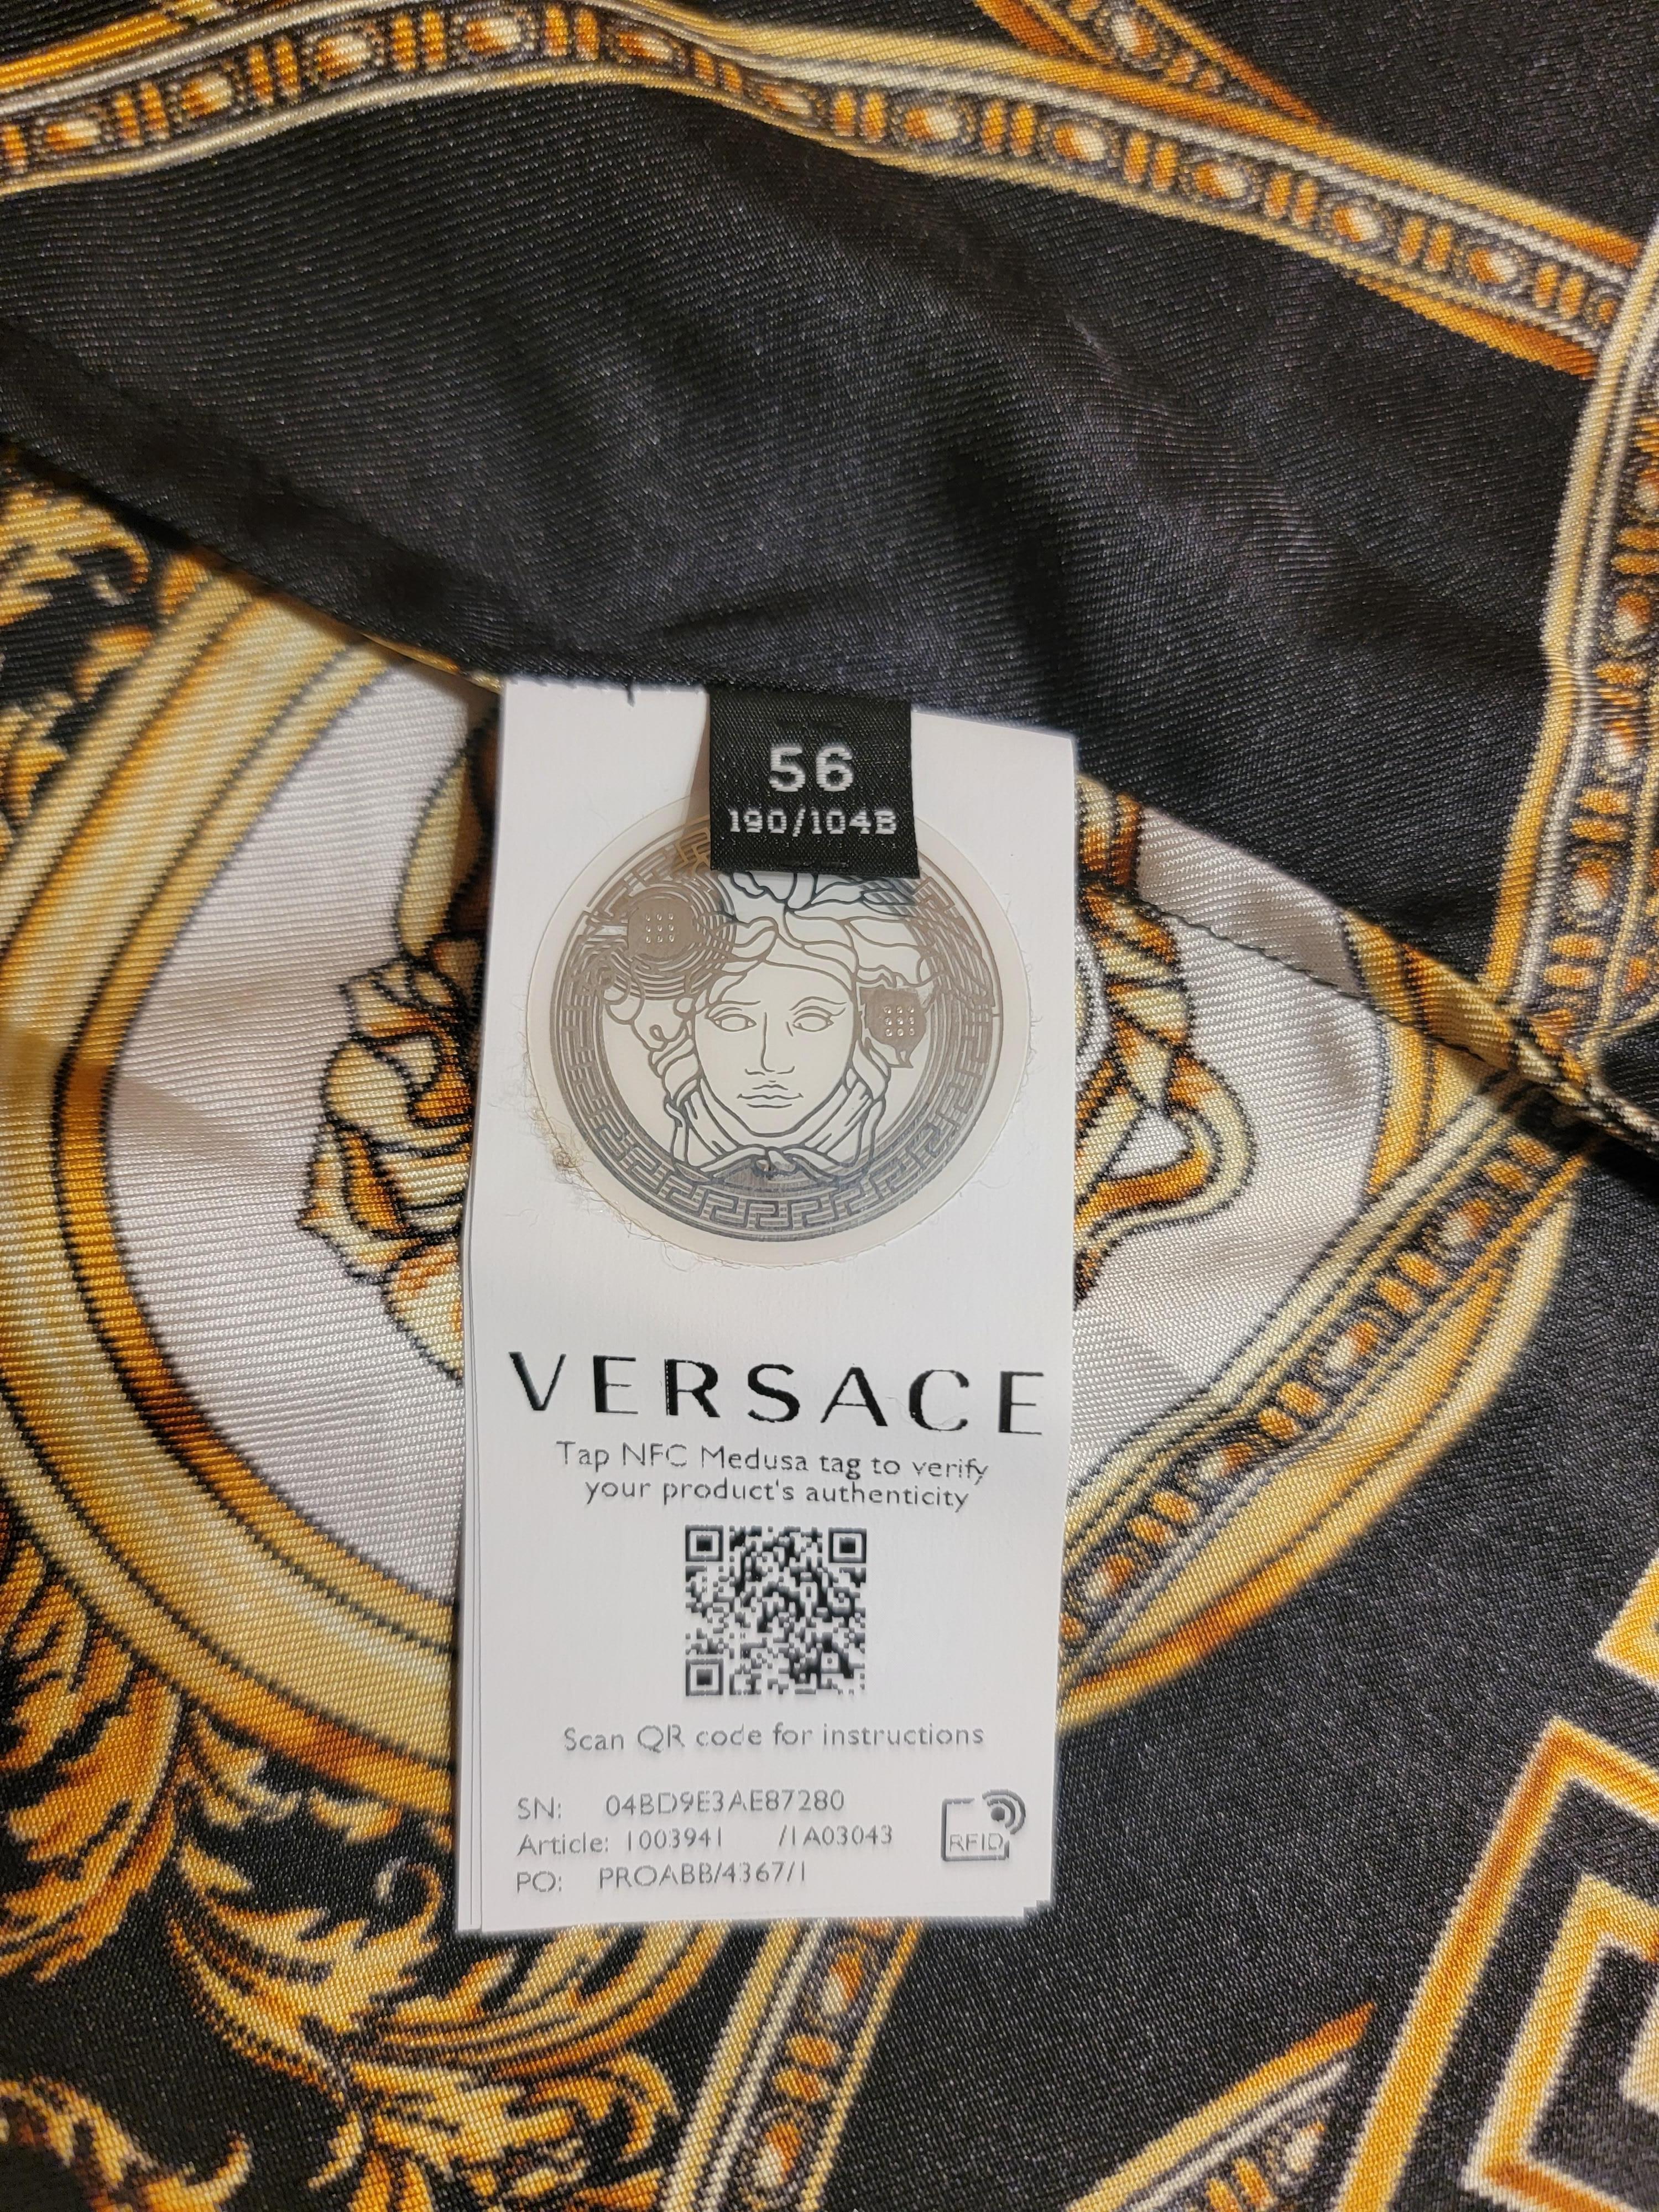 NEW Versace La Coupe Des Dieux Silk Shirt Medusa Greek Key Men's IT56 3XL 6